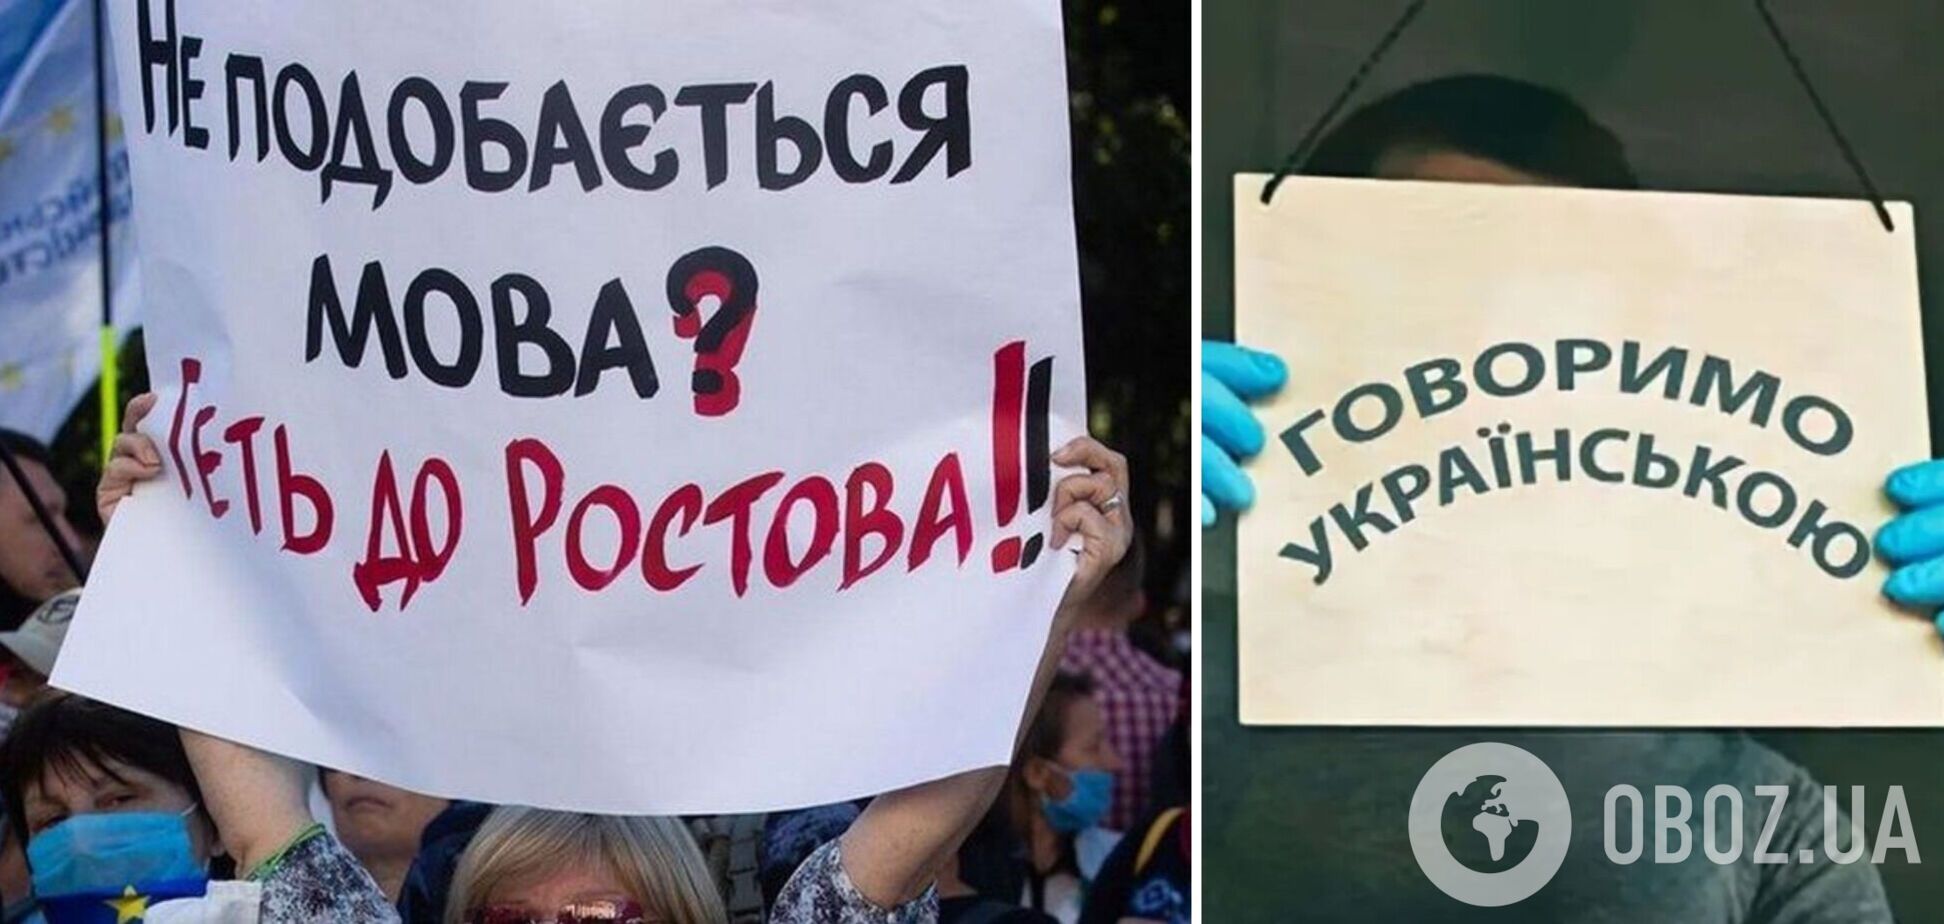 Работники бутика отказались обслуживать на украинском